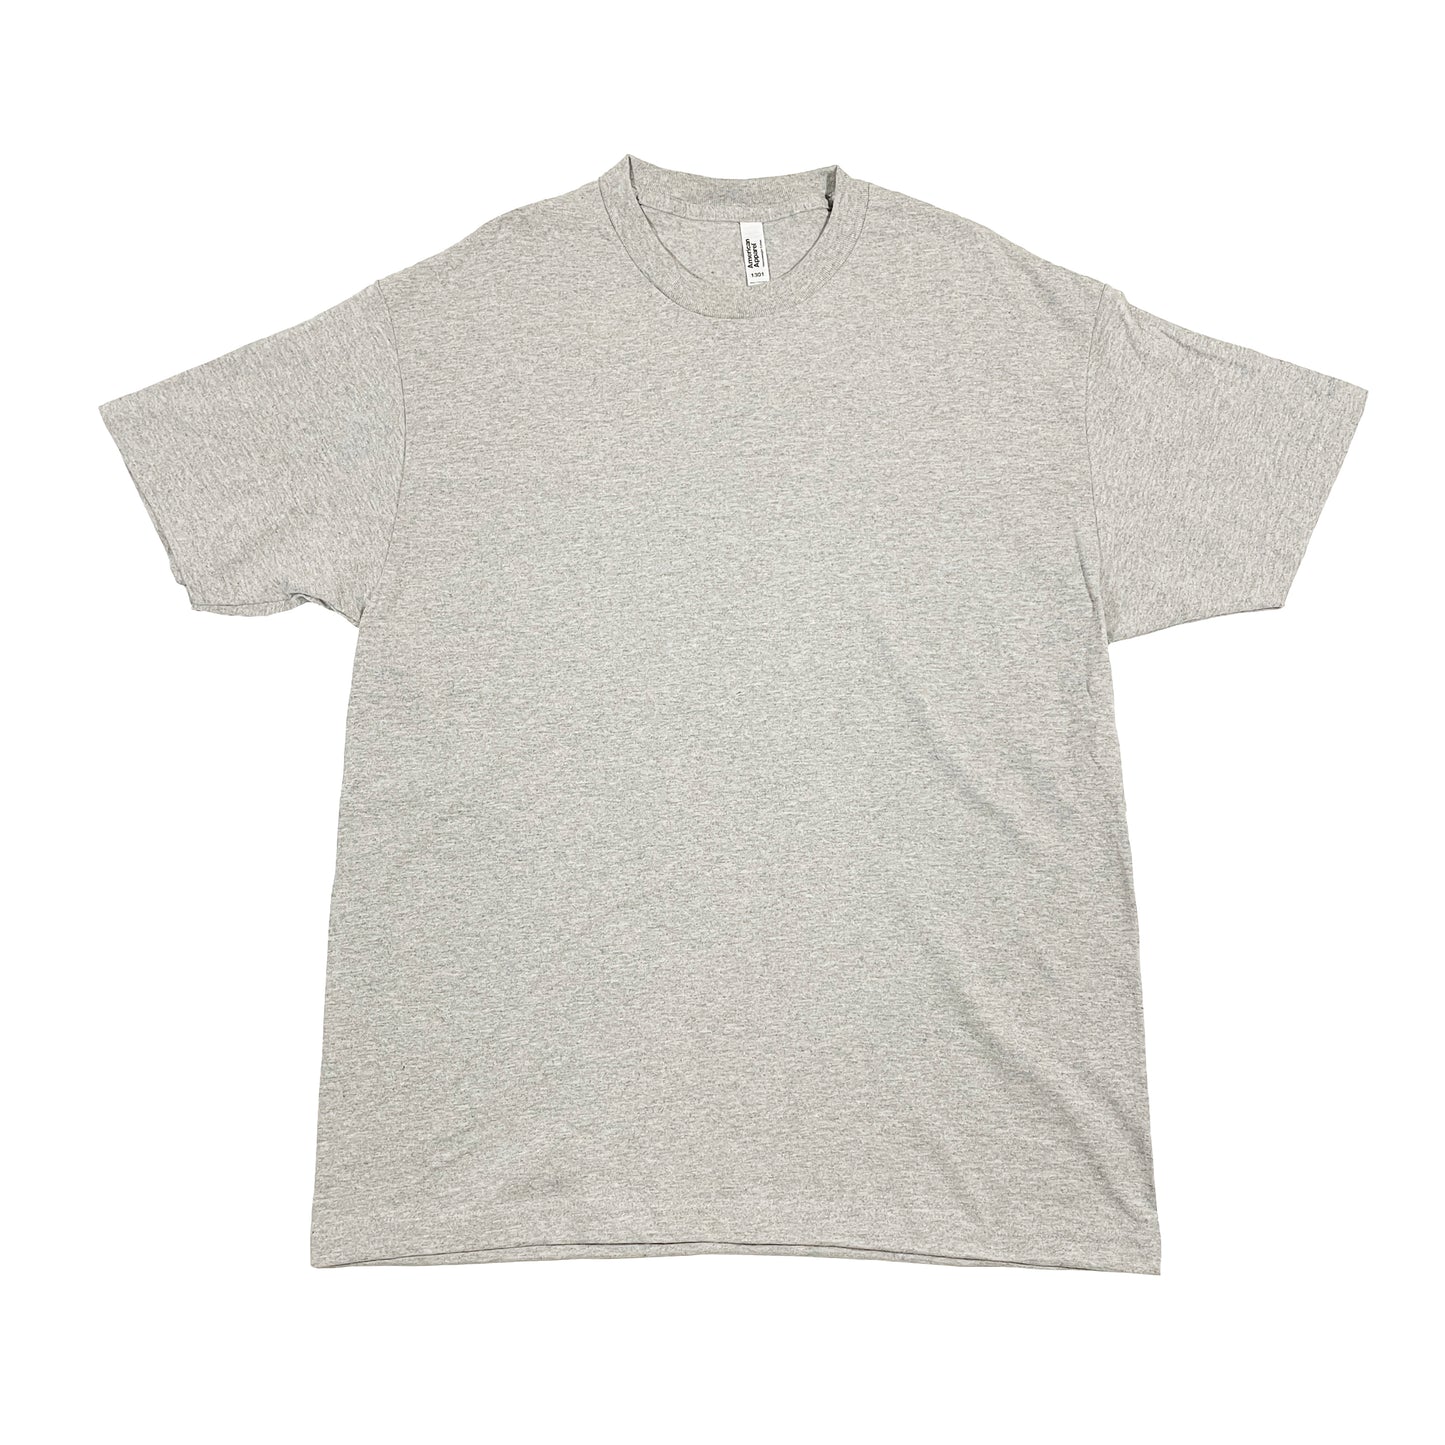 American Apparel 6.0oz Tシャツ AA1301 / ヘザーグレー